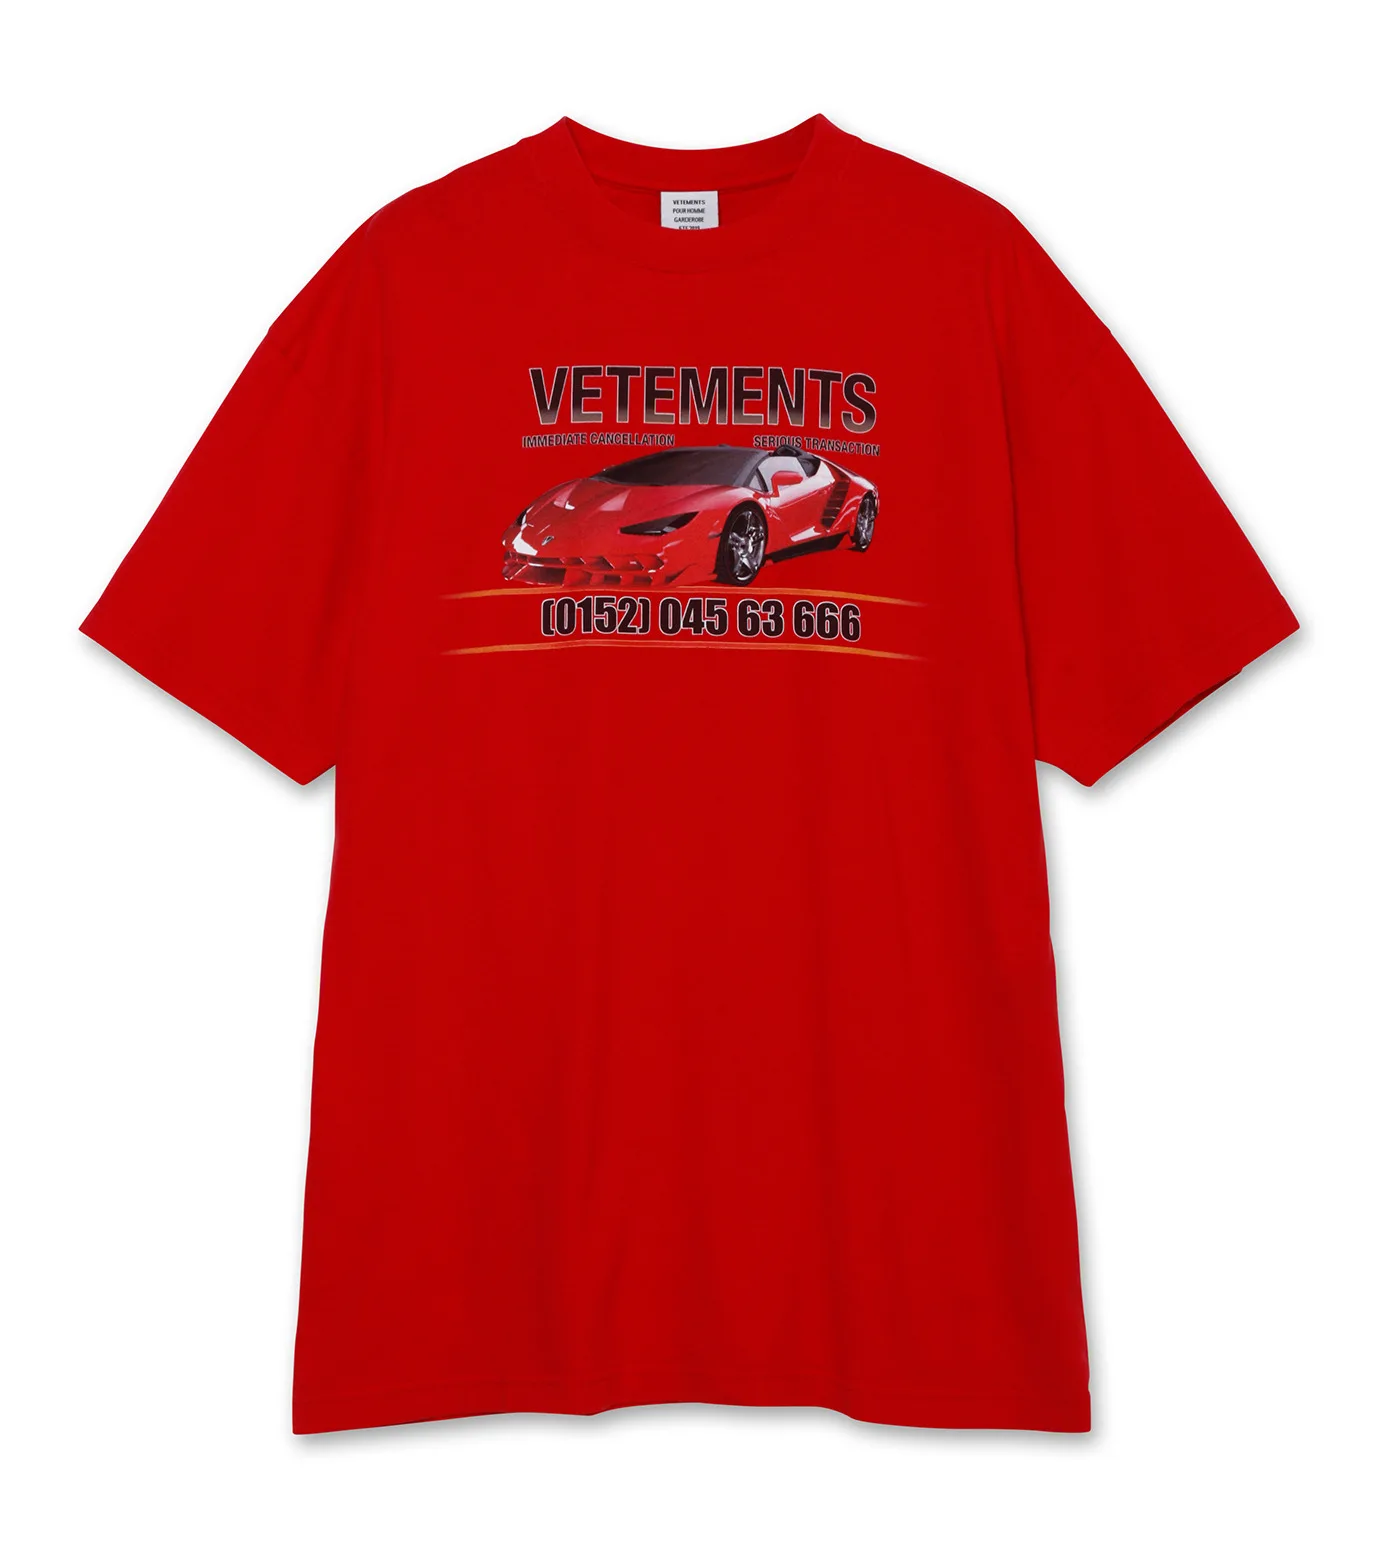 19SS Vetements, футболки, 1:1, настоящие метки, хлопок, Lamborghini, принт с автомобилем, футболки, уличная одежда, хип-хоп, туман, футболка Kanye West - Цвет: red1